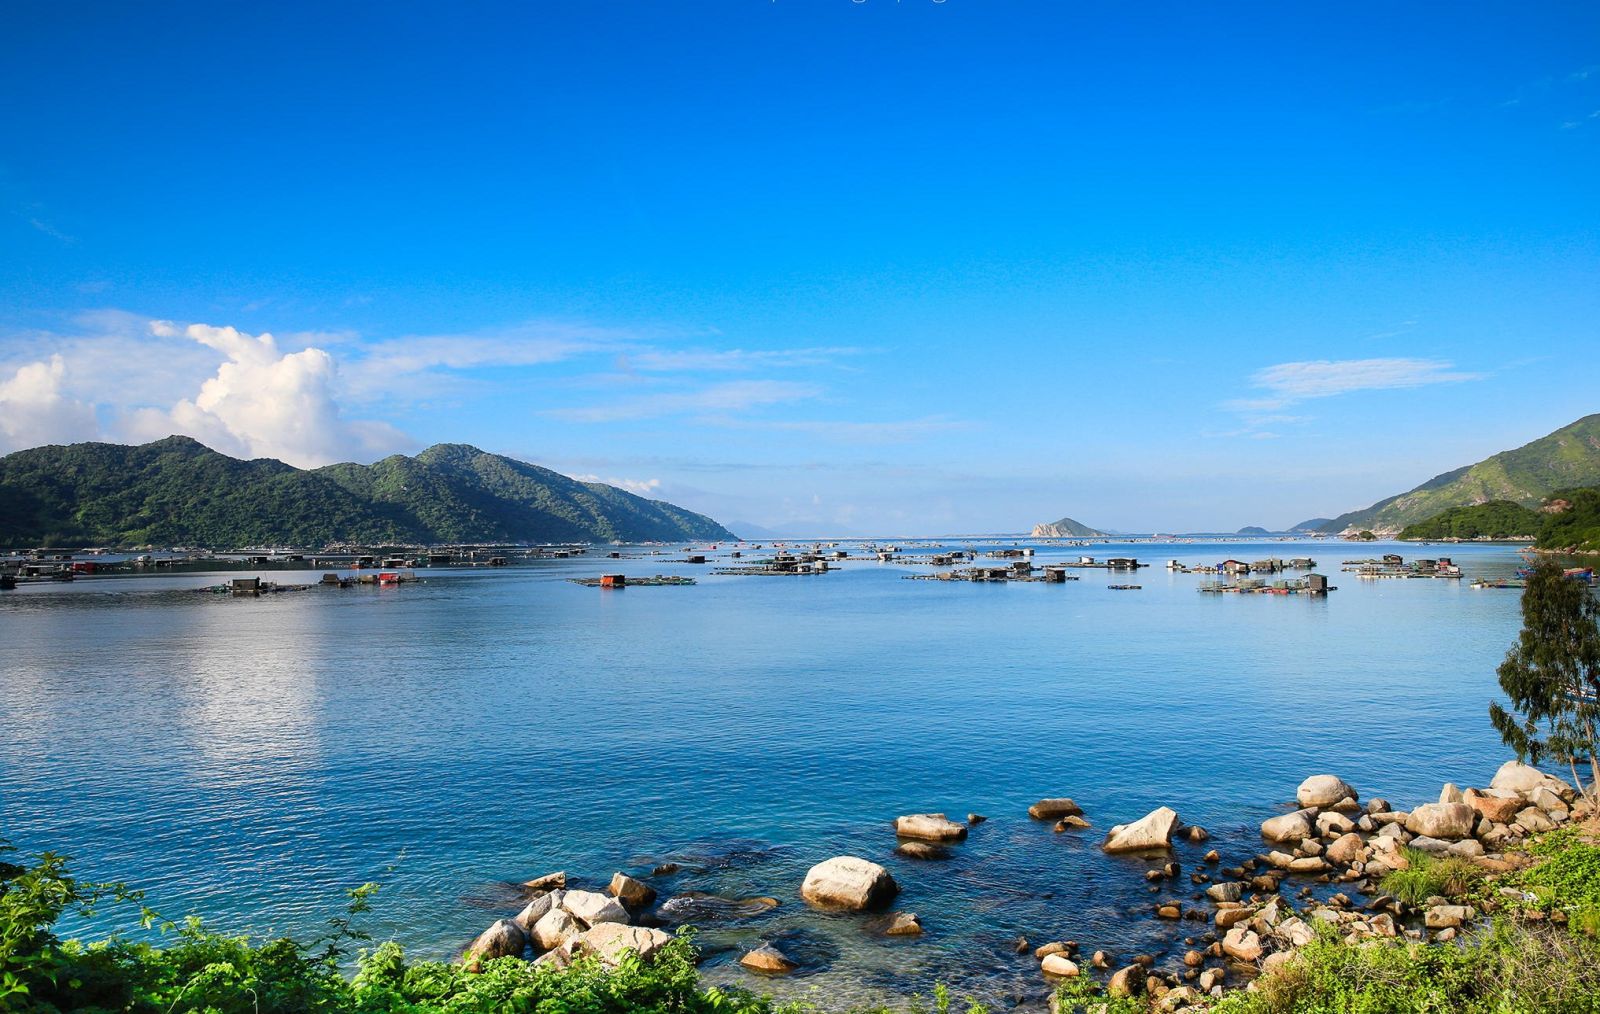 Dự án đất nền Golden Bay là khu đô thị quốc tế kiểu mẫu đầu tiên và duy nhất nằm bên Bãi Dài - Nha Trang, một trong những vịnh đẹp nhất thế giới